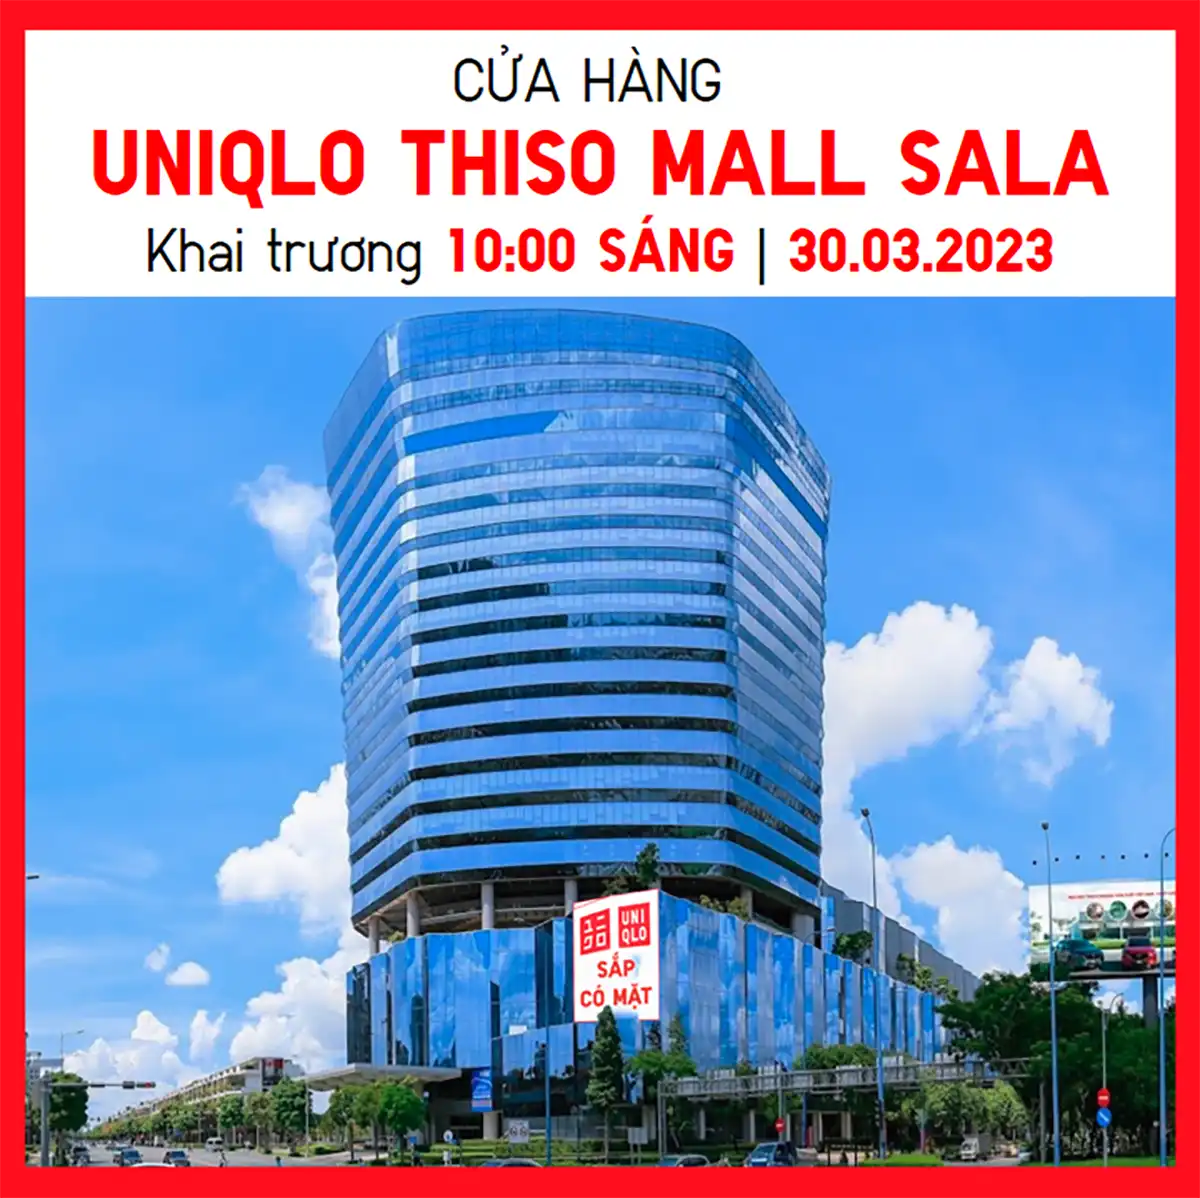 Cửa hàng UNIQLO THISO MALL SALA chính thức khai trương vào thứ năm, ngày 30 tháng 03